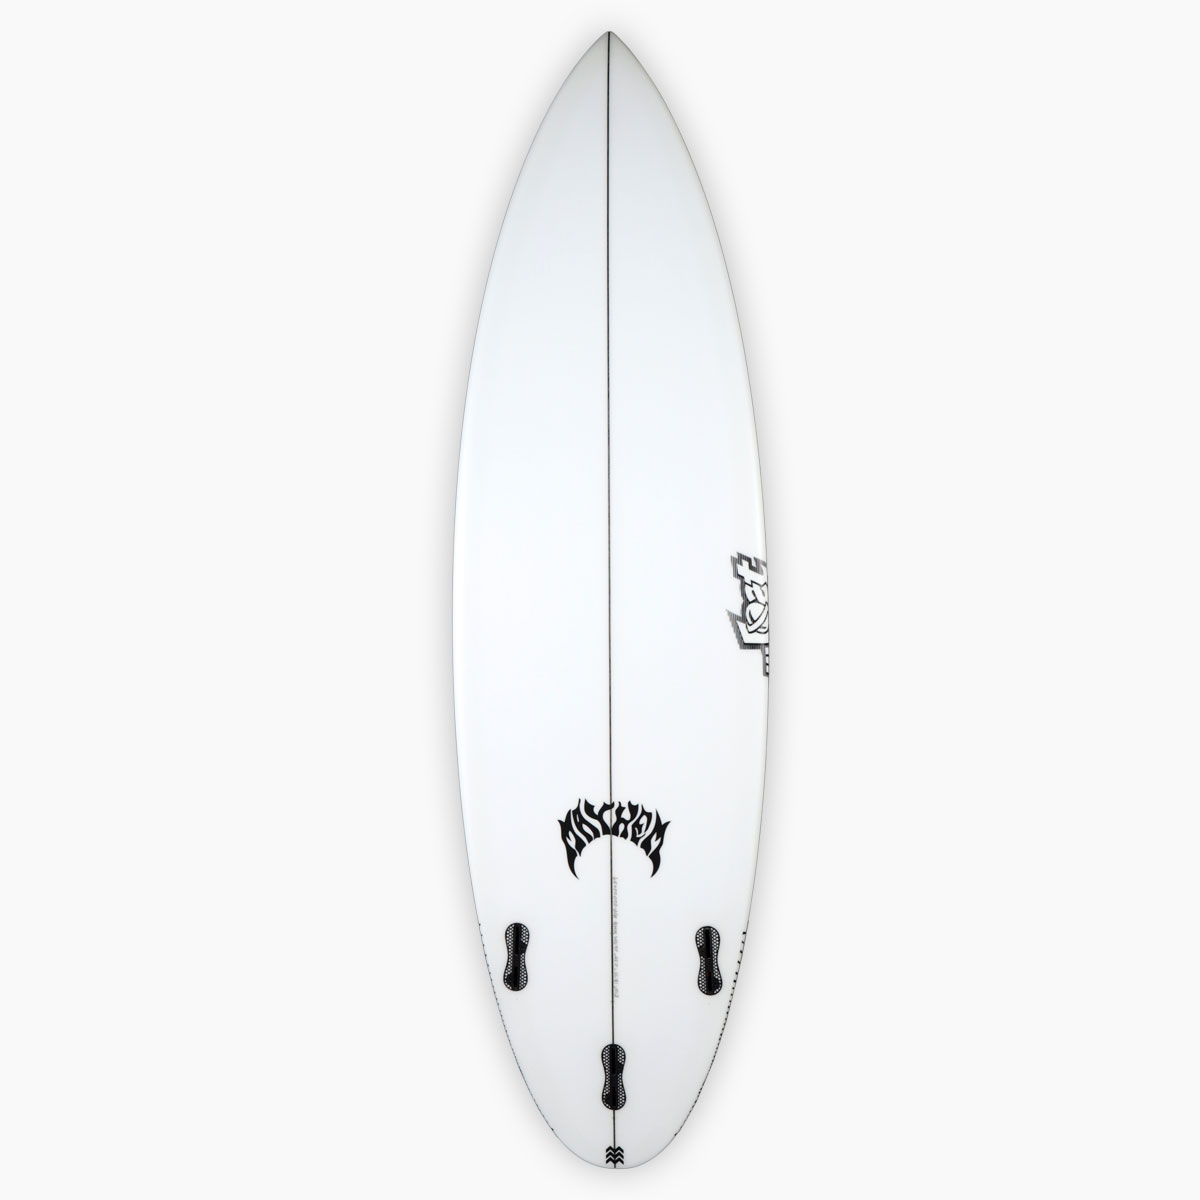 SurfBoardNet / ブランド:LOST SURFBOARDS モデル:DRIVER 2.0 PRO ...